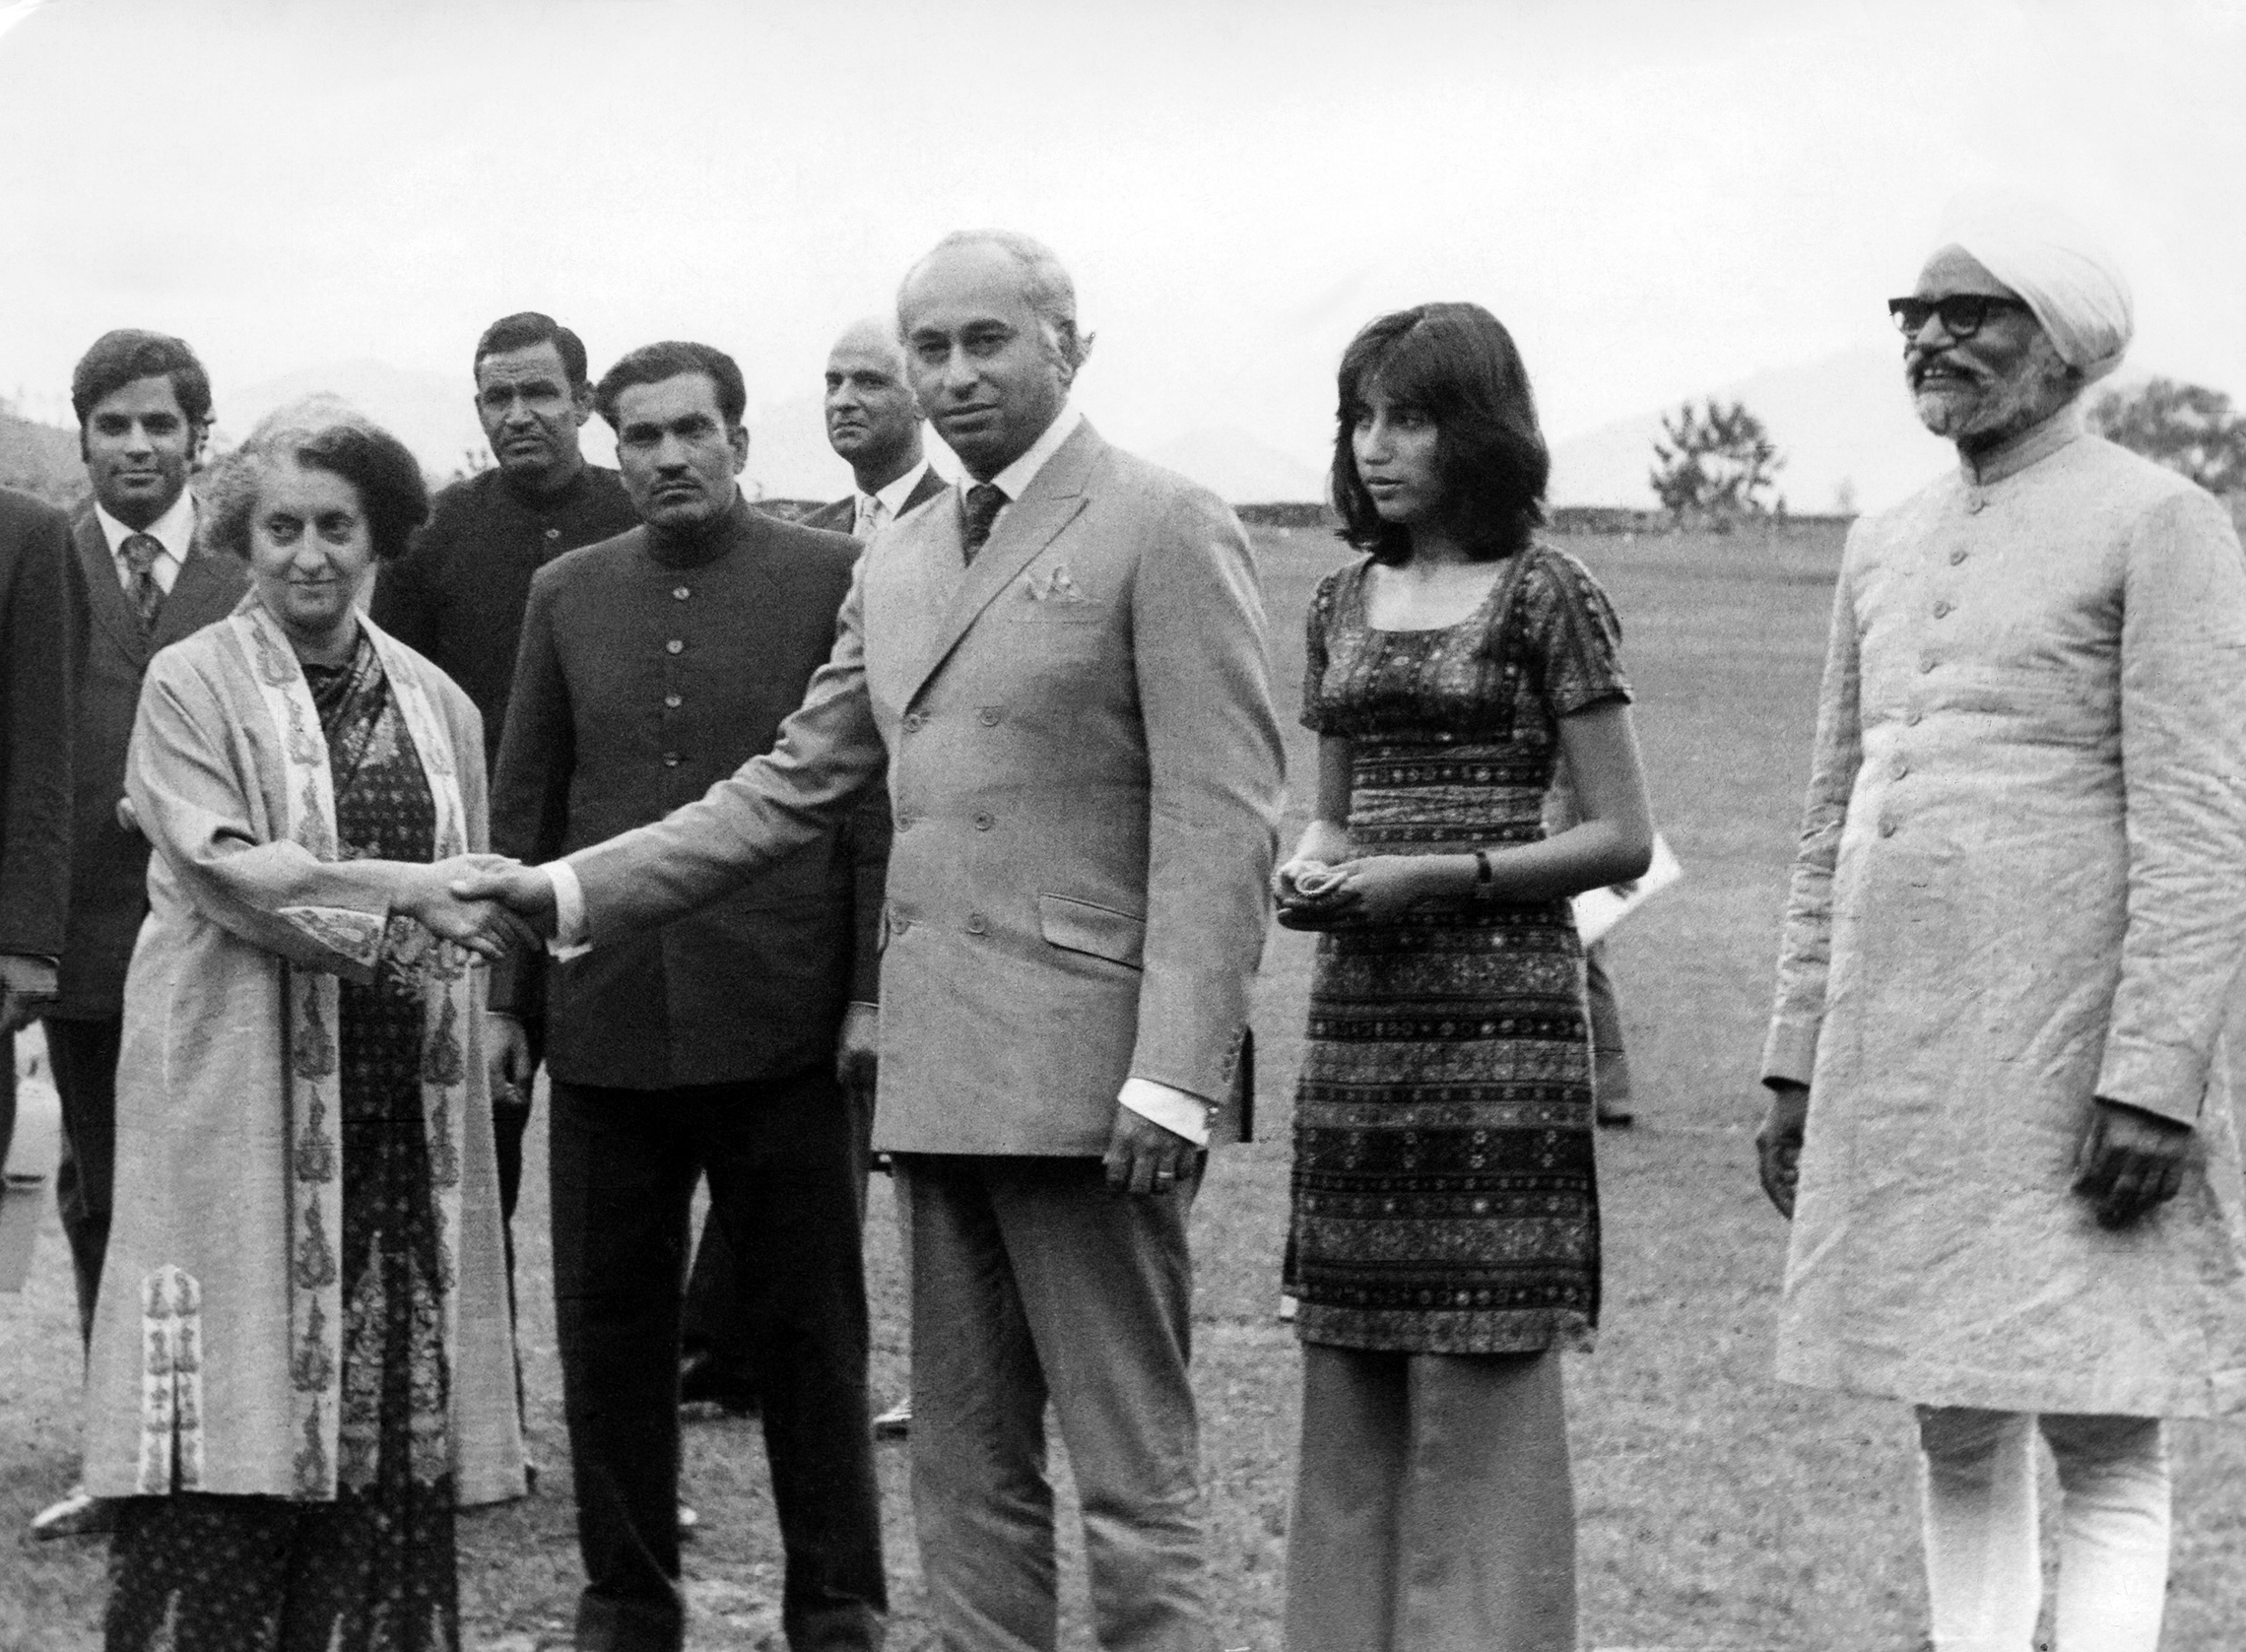 Le président pakistanais Zulfikar Ali Bhutto serre la main du Premier ministre indien Indira Gandhi le 28 juin 1972 à Shimla, la capitale d'été de l'Inde, sous le regard de sa fille Benazir Bhutto et du ministre indien des Affaires étrangères Swaran Singh. Bhutto s'est rendu en Inde pour rencontrer le premier ministre Indira Gandhi et négocier un accord de paix officiel et la libération de 93 000 prisonniers de guerre pakistanais. Les deux dirigeants ont signé l'accord de Shimla, qui engageait les deux nations à établir une ligne de contrôle au Cachemire et les obligeait à résoudre les différends de manière pacifique par des discussions bilatérales. (Photo par AFP/Getty Images)'s Prime Minister Indira Gandhi June 28, 1972 in Shimla, the summer capital of India, while his daughter Benazir Bhutto and Indian Foreign Minister Swaran Singh look on. Bhutto visited India to meet Prime Minister Indira Gandhi and negotiated a formal peace agreement and the release of 93,000 Pakistani prisoners of war. The two leaders signed the Shimla Agreement, which committed both nations to establish a Line of Control in Kashmir and obligated them to resolve disputes peacefully through bilateral talks. (Photo by AFP/Getty Images)